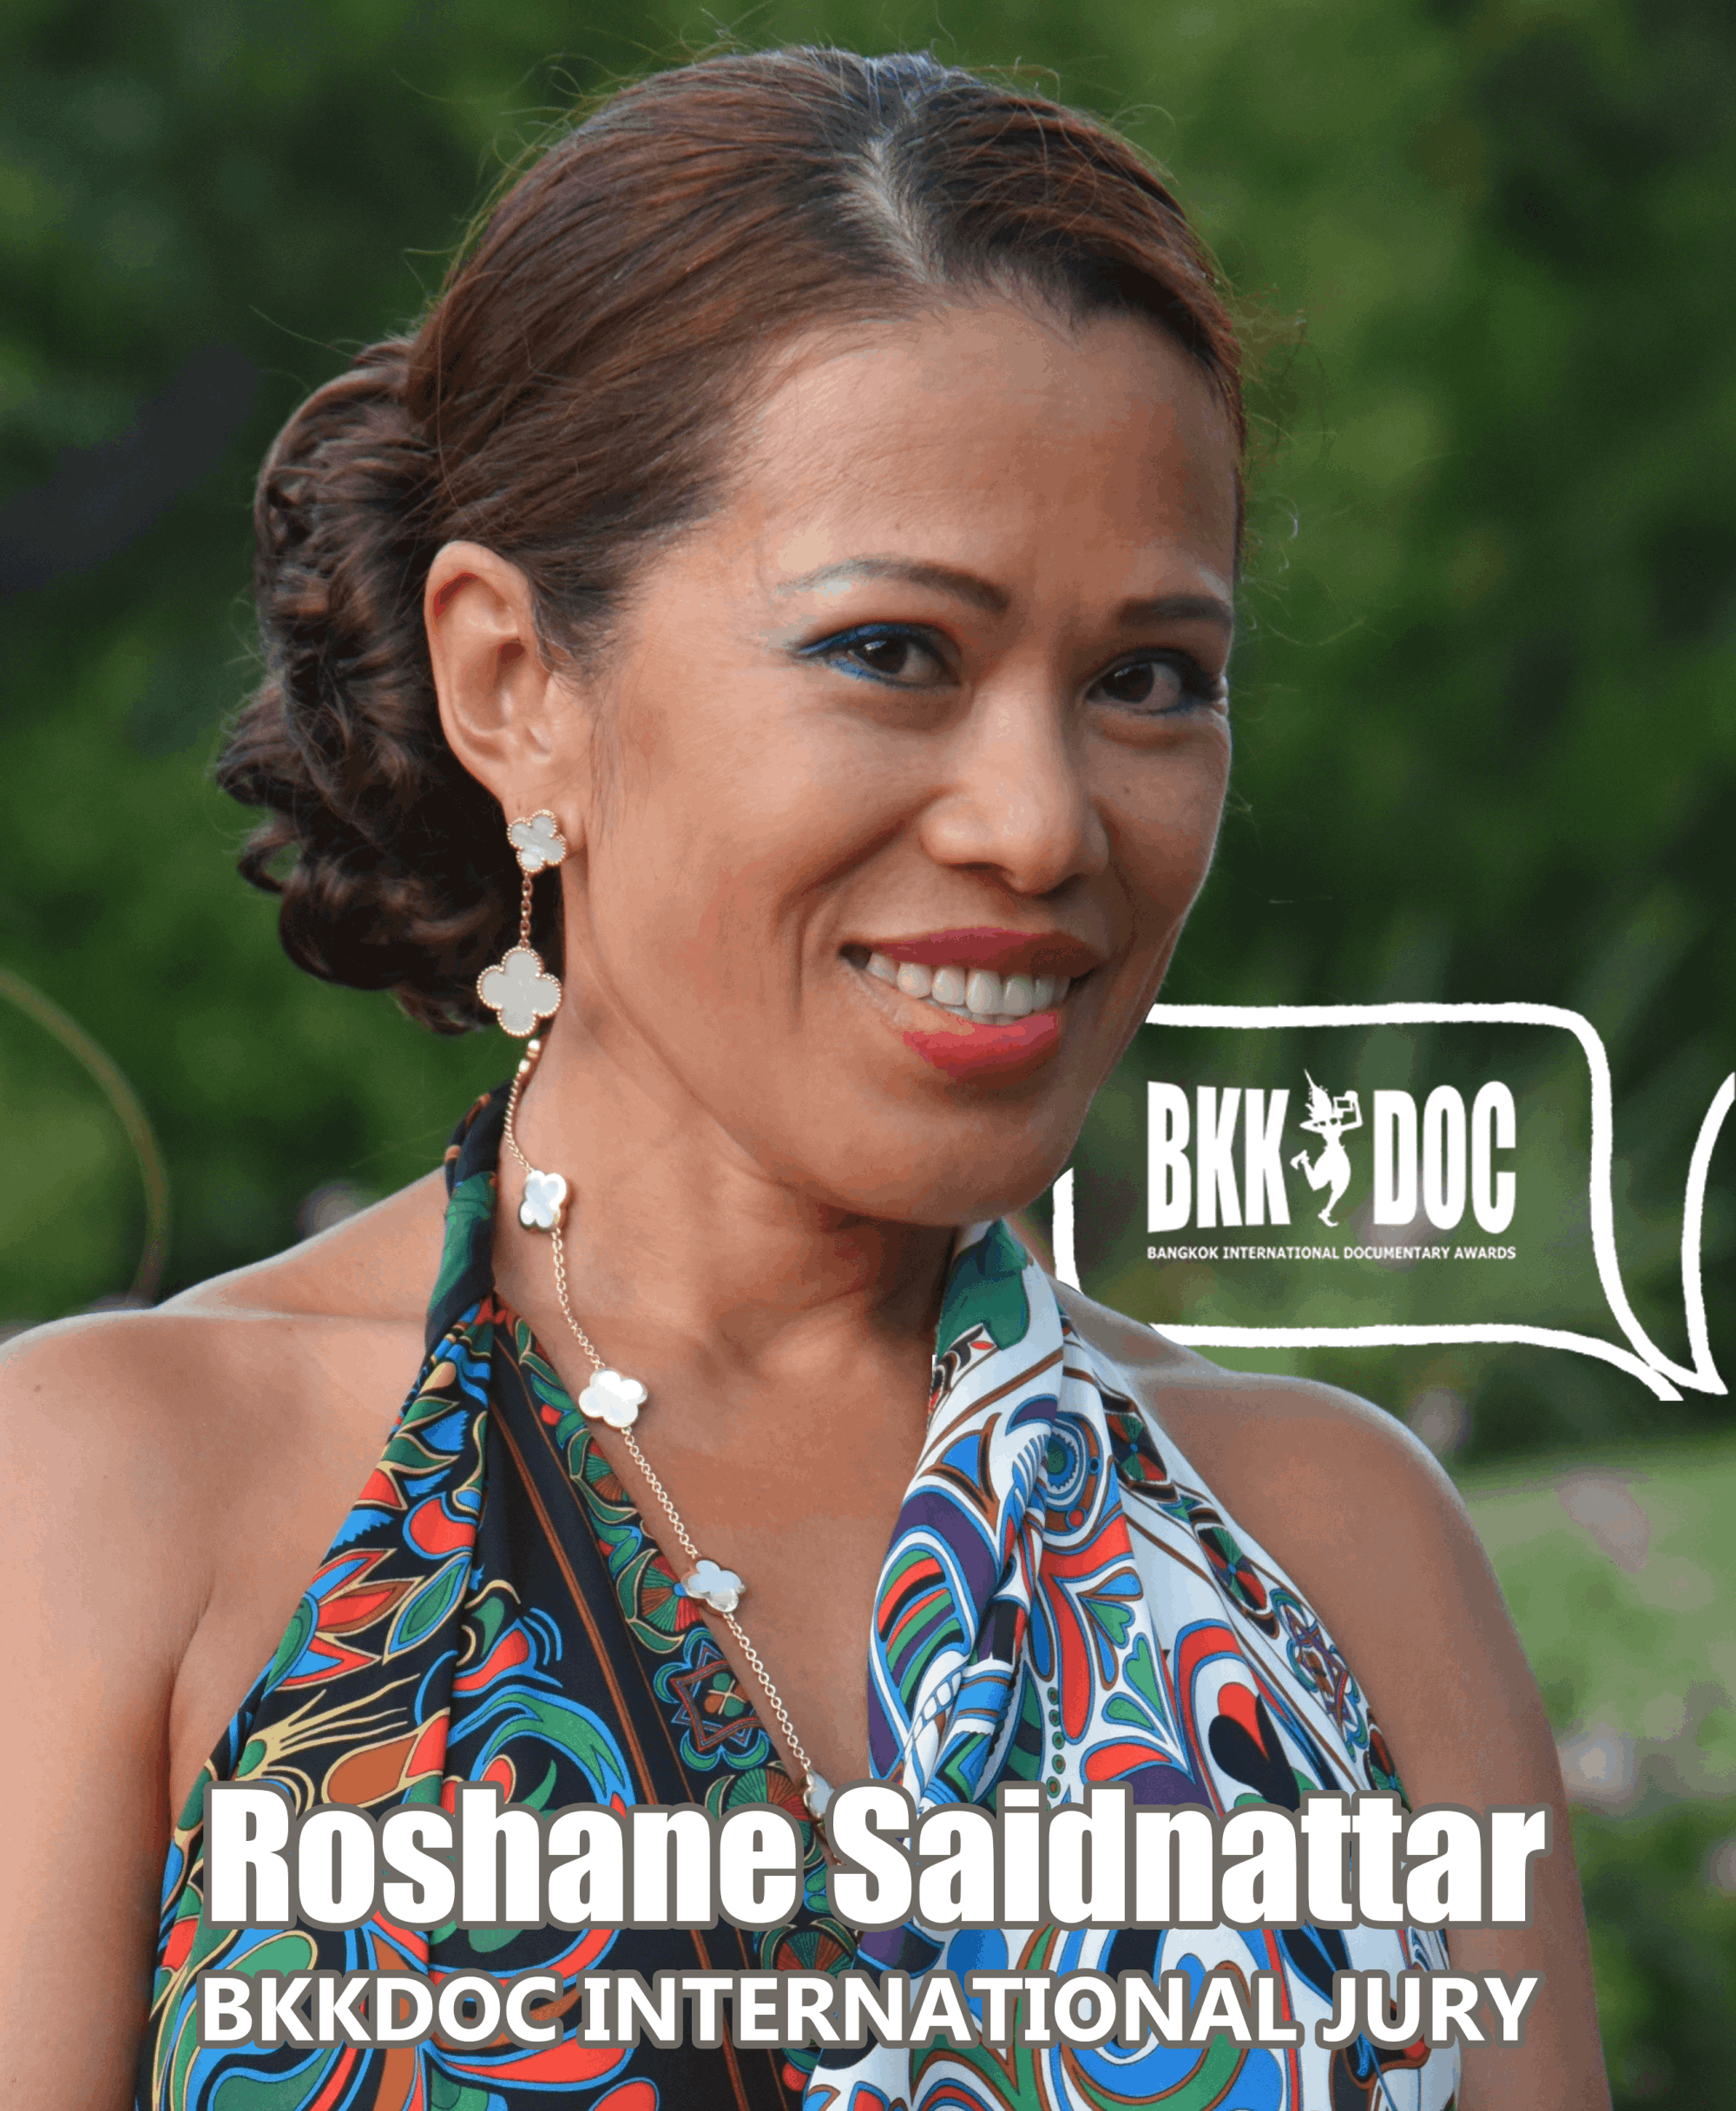 Roshane Saidnattar